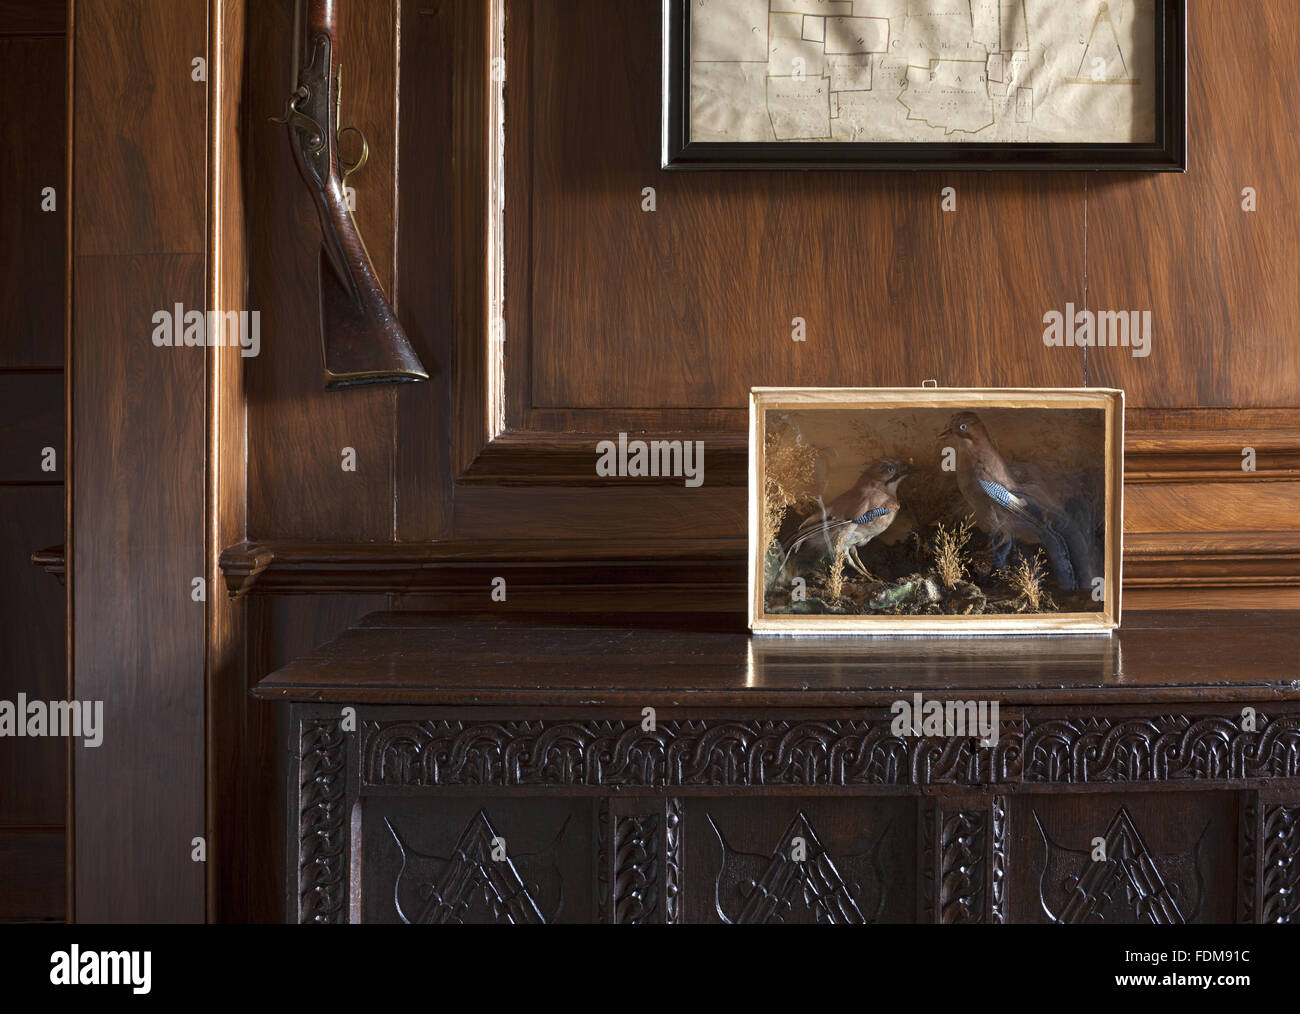 Eine kleine Kiste mit ausgestopfte Vögel auf eine geschnitzte hölzerne Truhe in der Ante-Studie/Schuhraum Belton House, Lincolnshire. Eine Gewehr montiert an der Wand zu sehen. Stockfoto